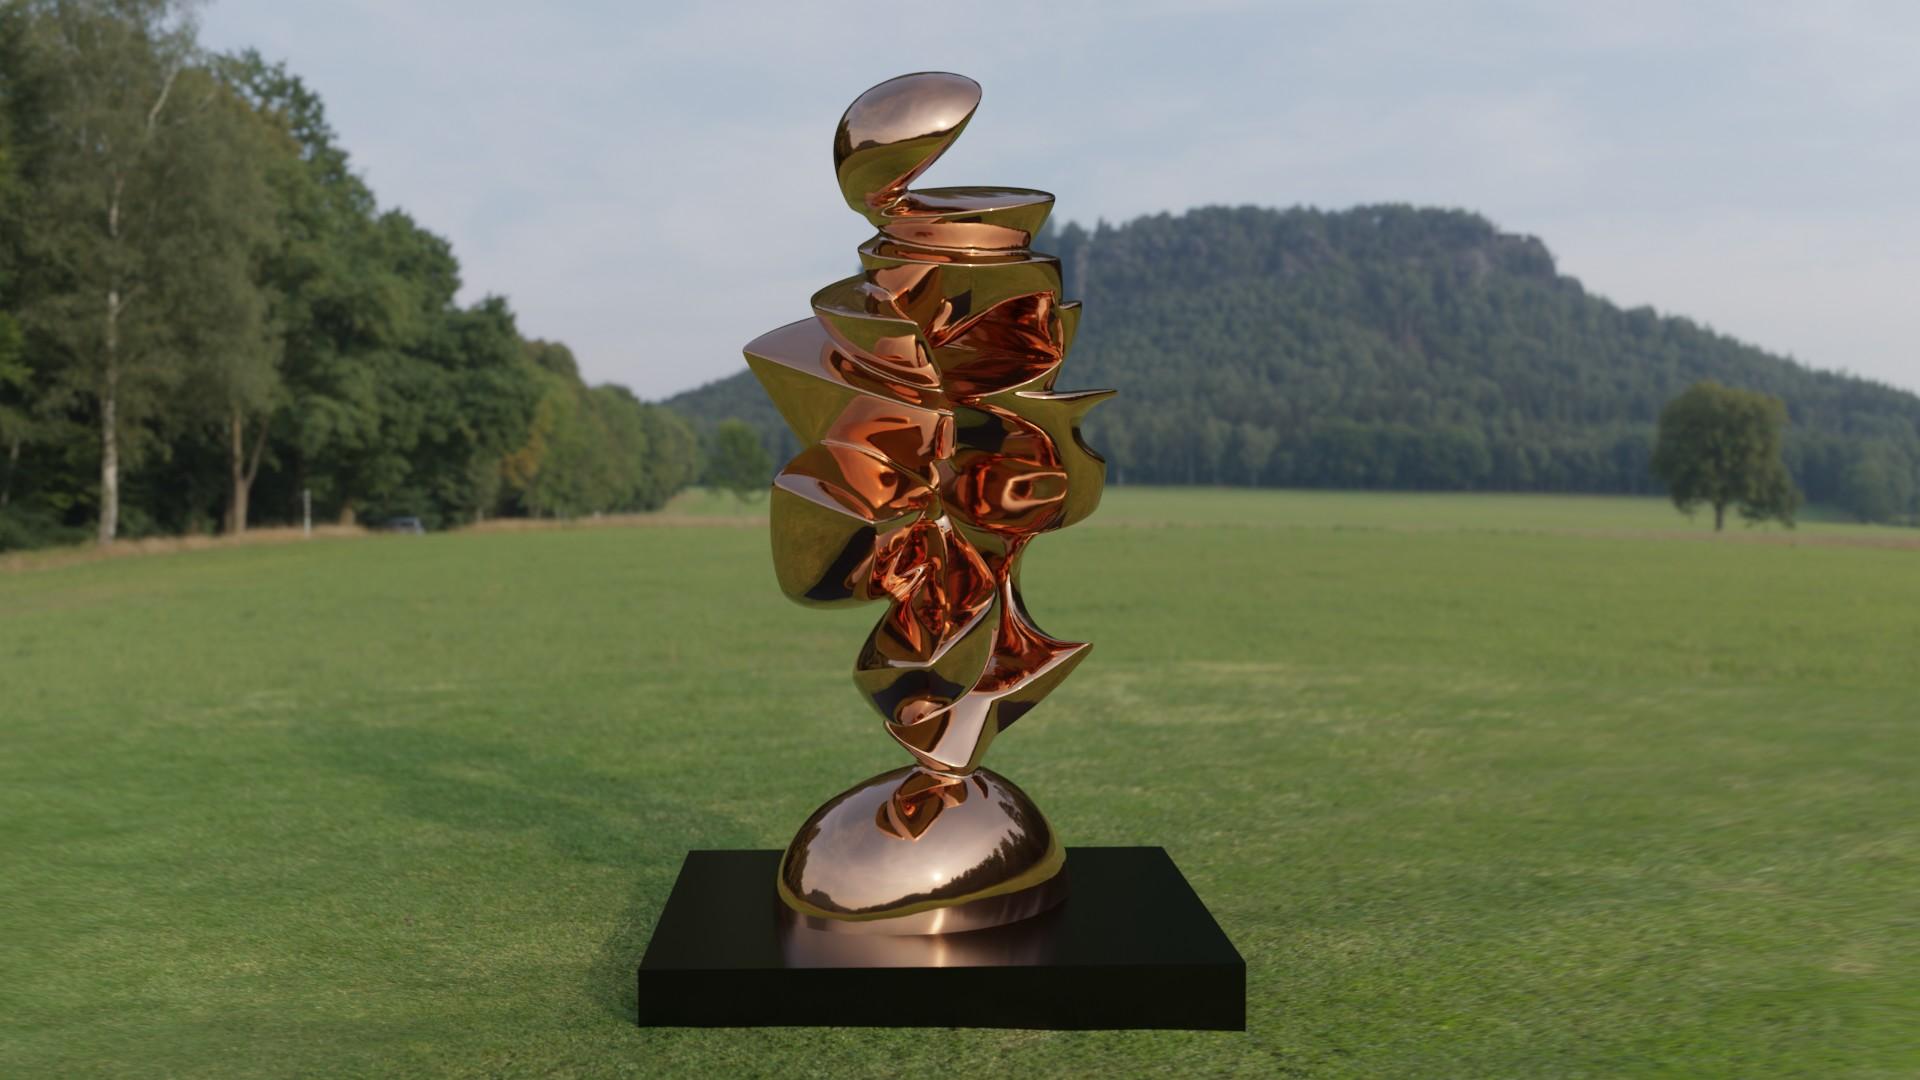 Expansion ( des Herzens ) – Sculpture von Jan Willem Krijger